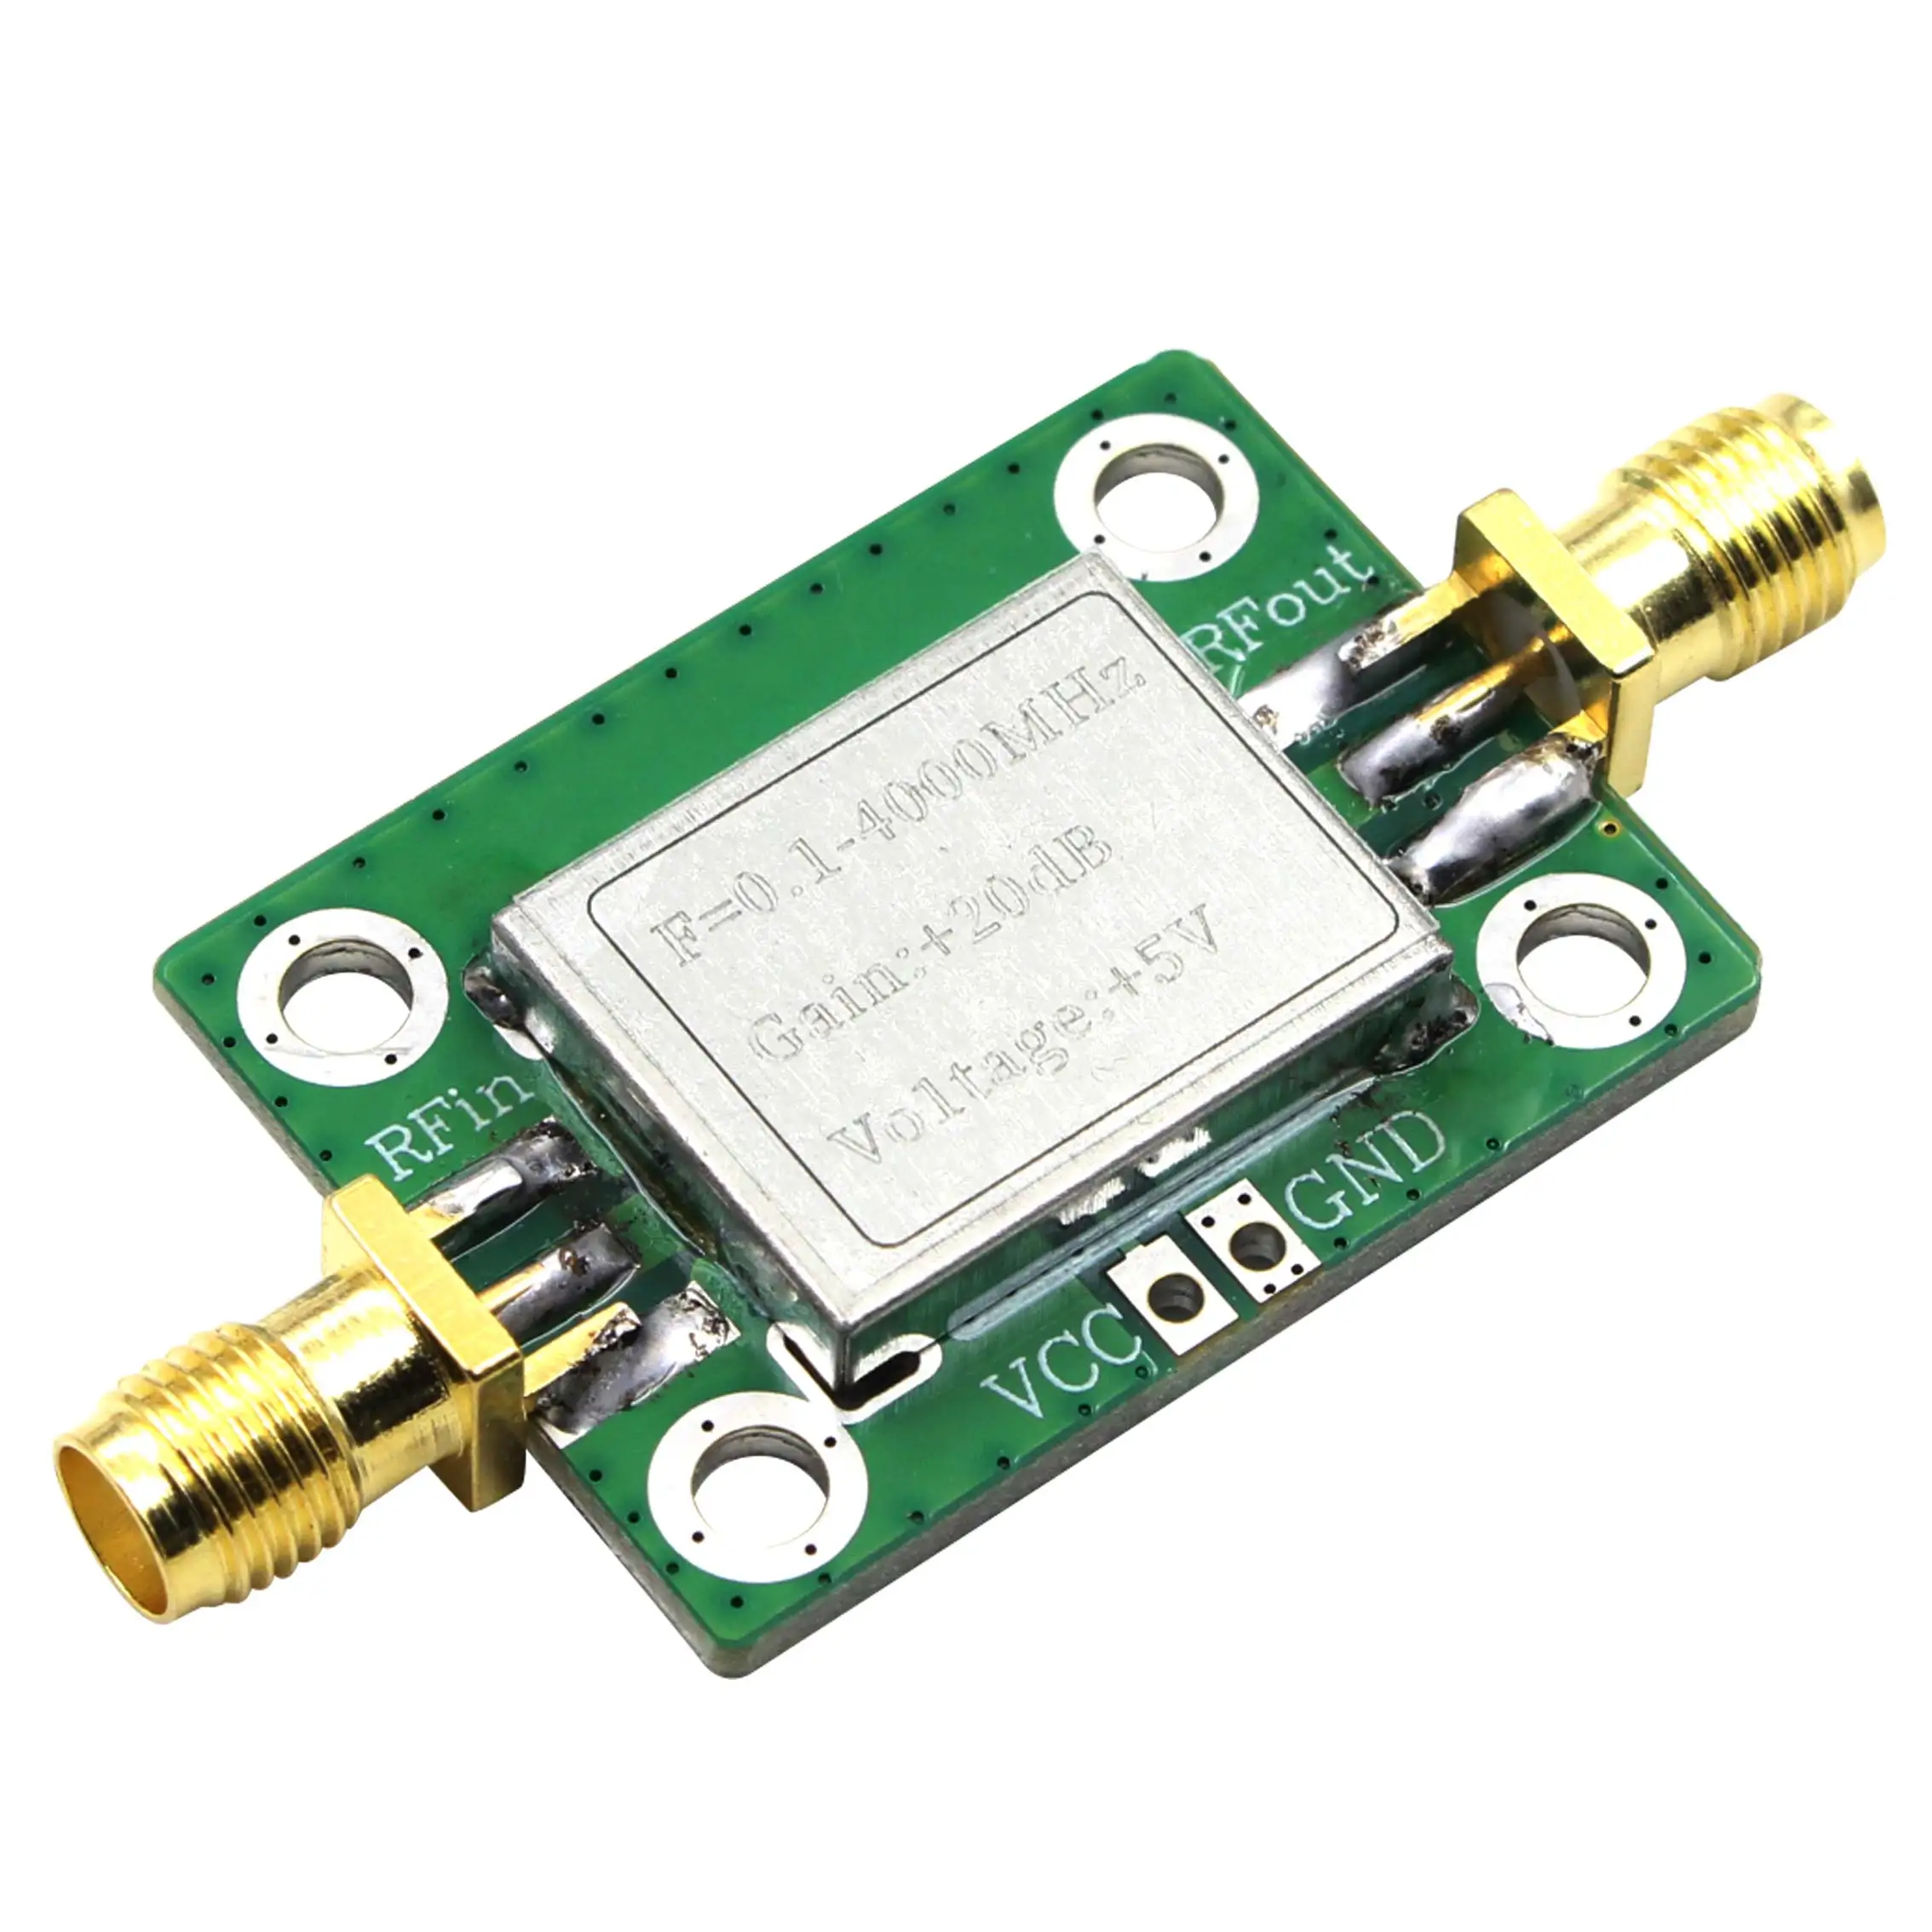 RF Amplifier Board 0.1-6000MHz LNA Broadband Signal Receiver Low Noise Module 